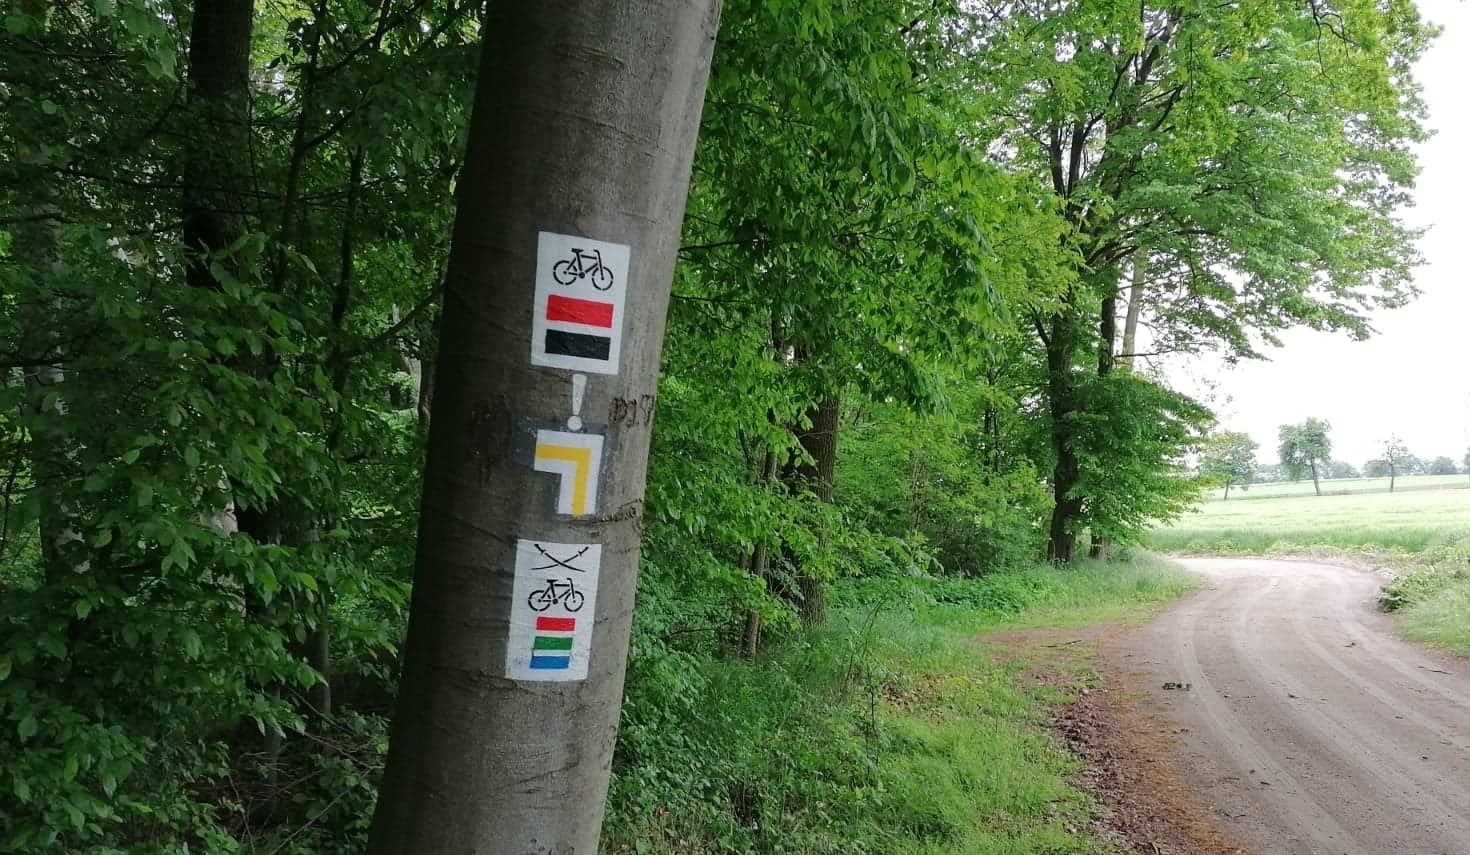 Zdjęcie przedstawia oznaczenia szlaków turystycznych pieszych i rowerowych na pniu drzewa. Fot. Bartosz Stępień Nadleśnictwo Sieraków